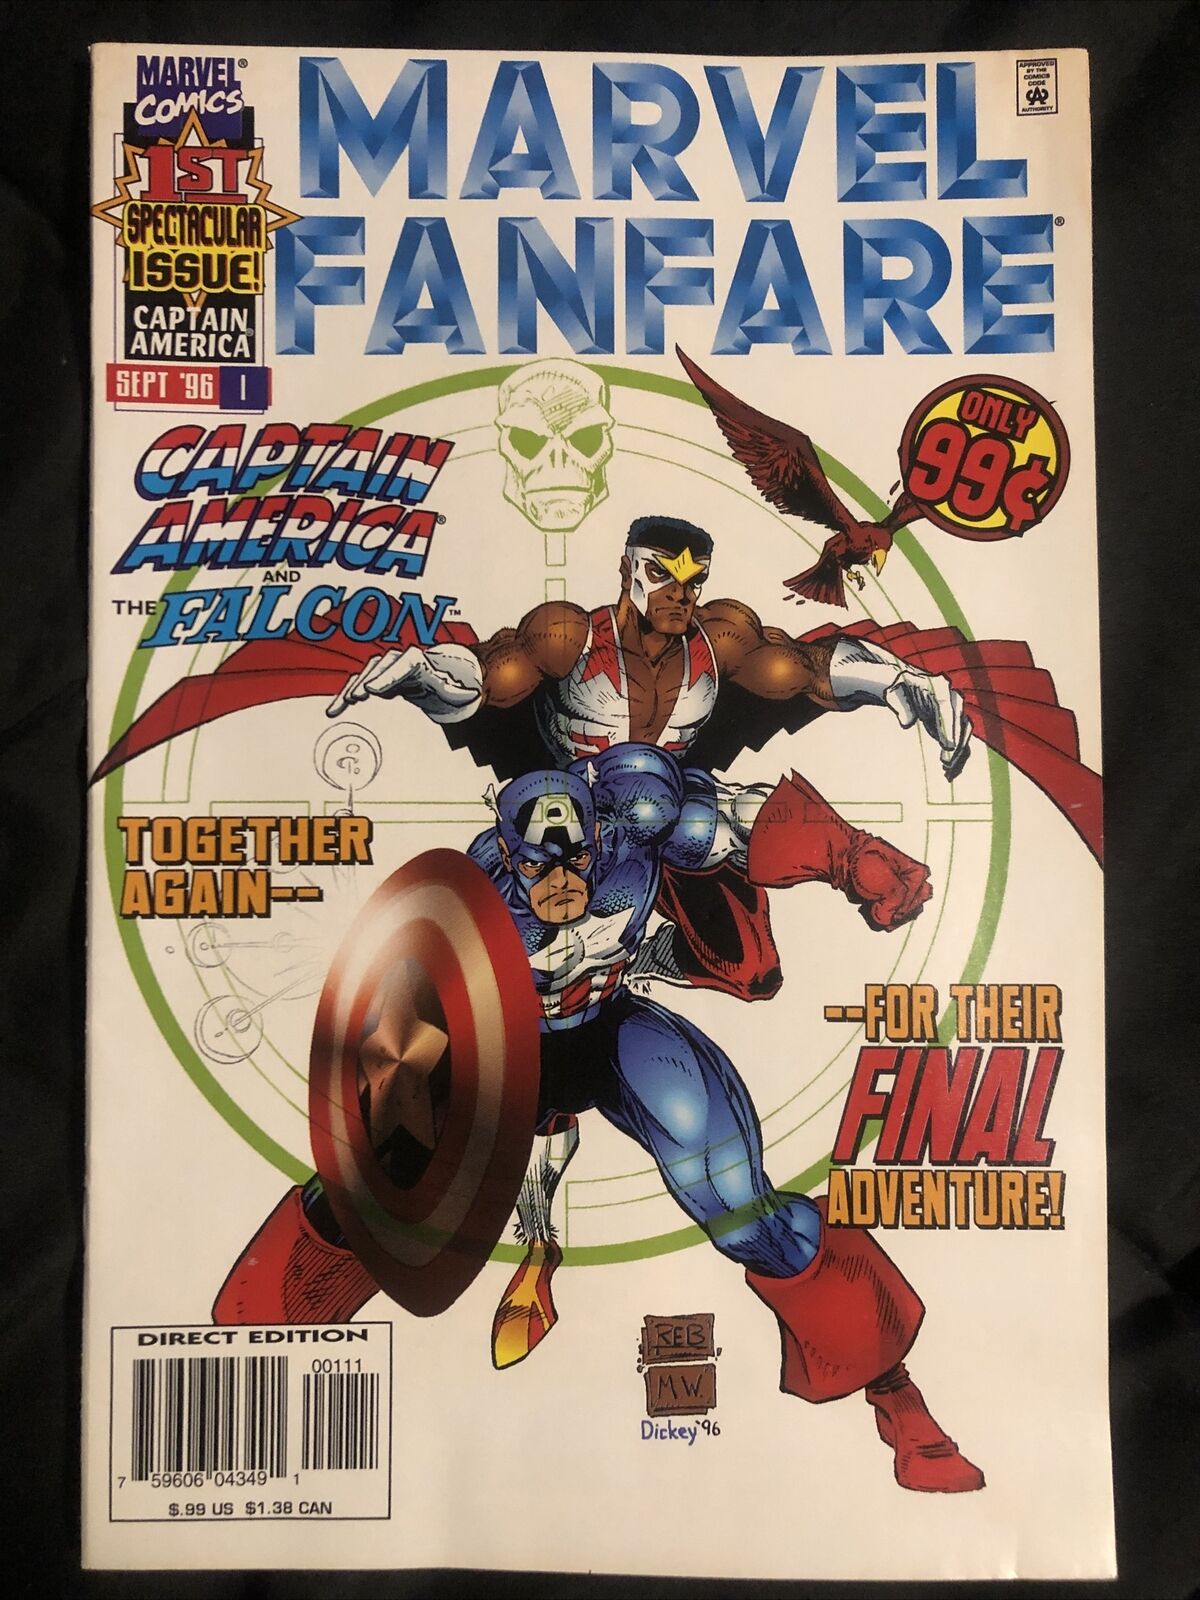 MARVEL FANFARE #1 1996 Captain America Falcon Bagged & Boarded